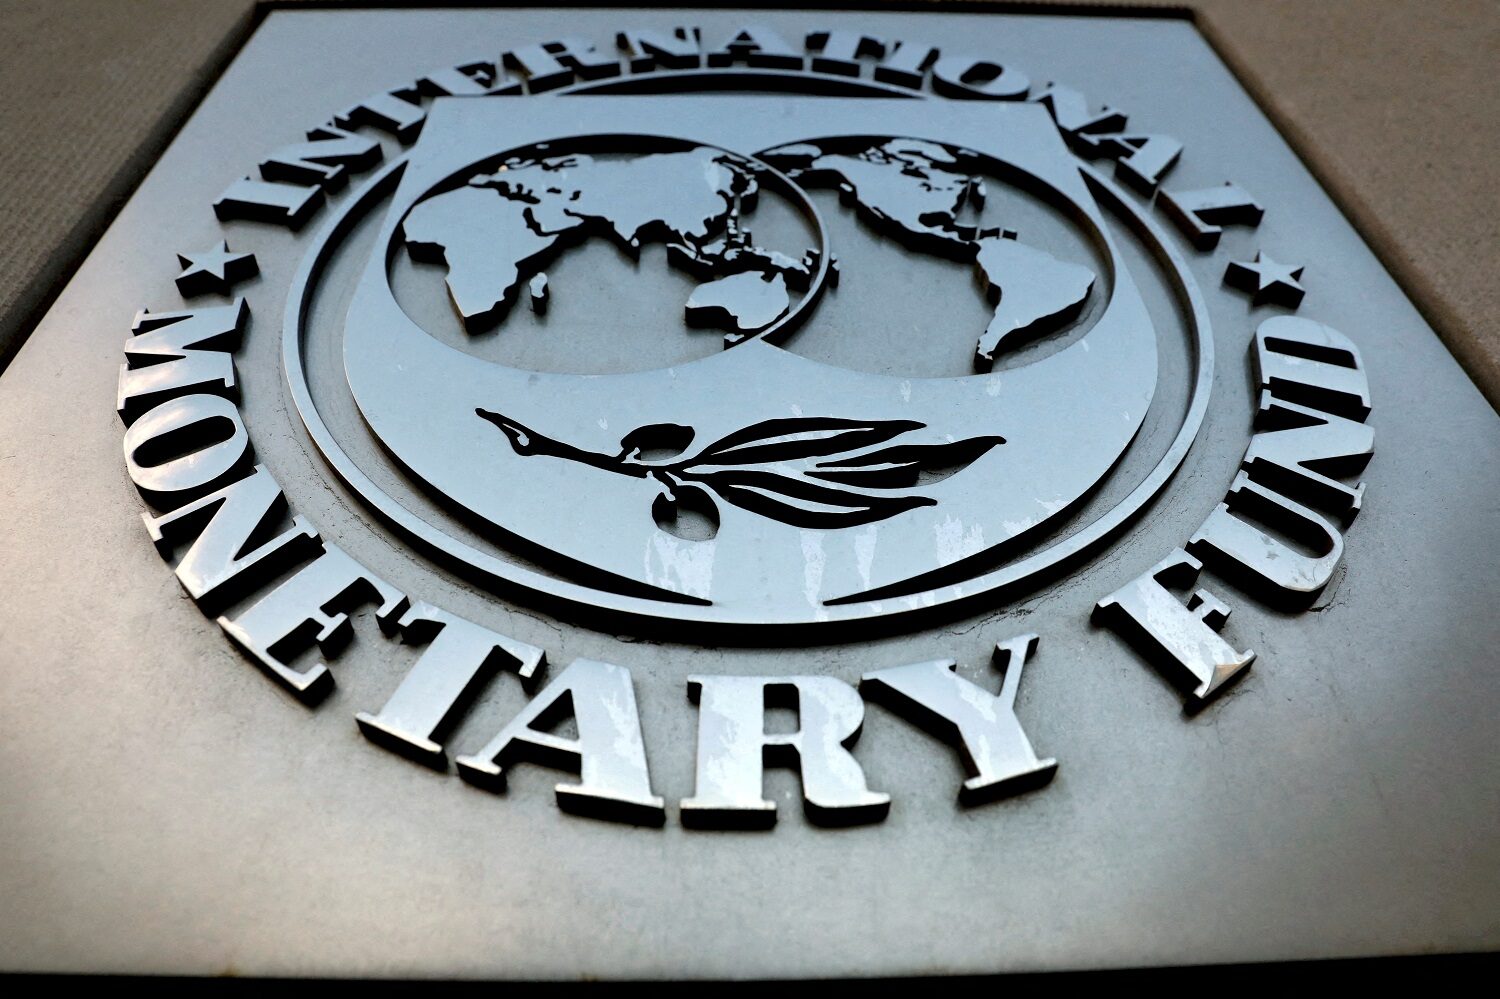 IMF ปรับลดการเติบโต ‘สหรัฐ-จีน’ ปีนี้ ศก.โลกชะลอตัวเหลือ 4.4%